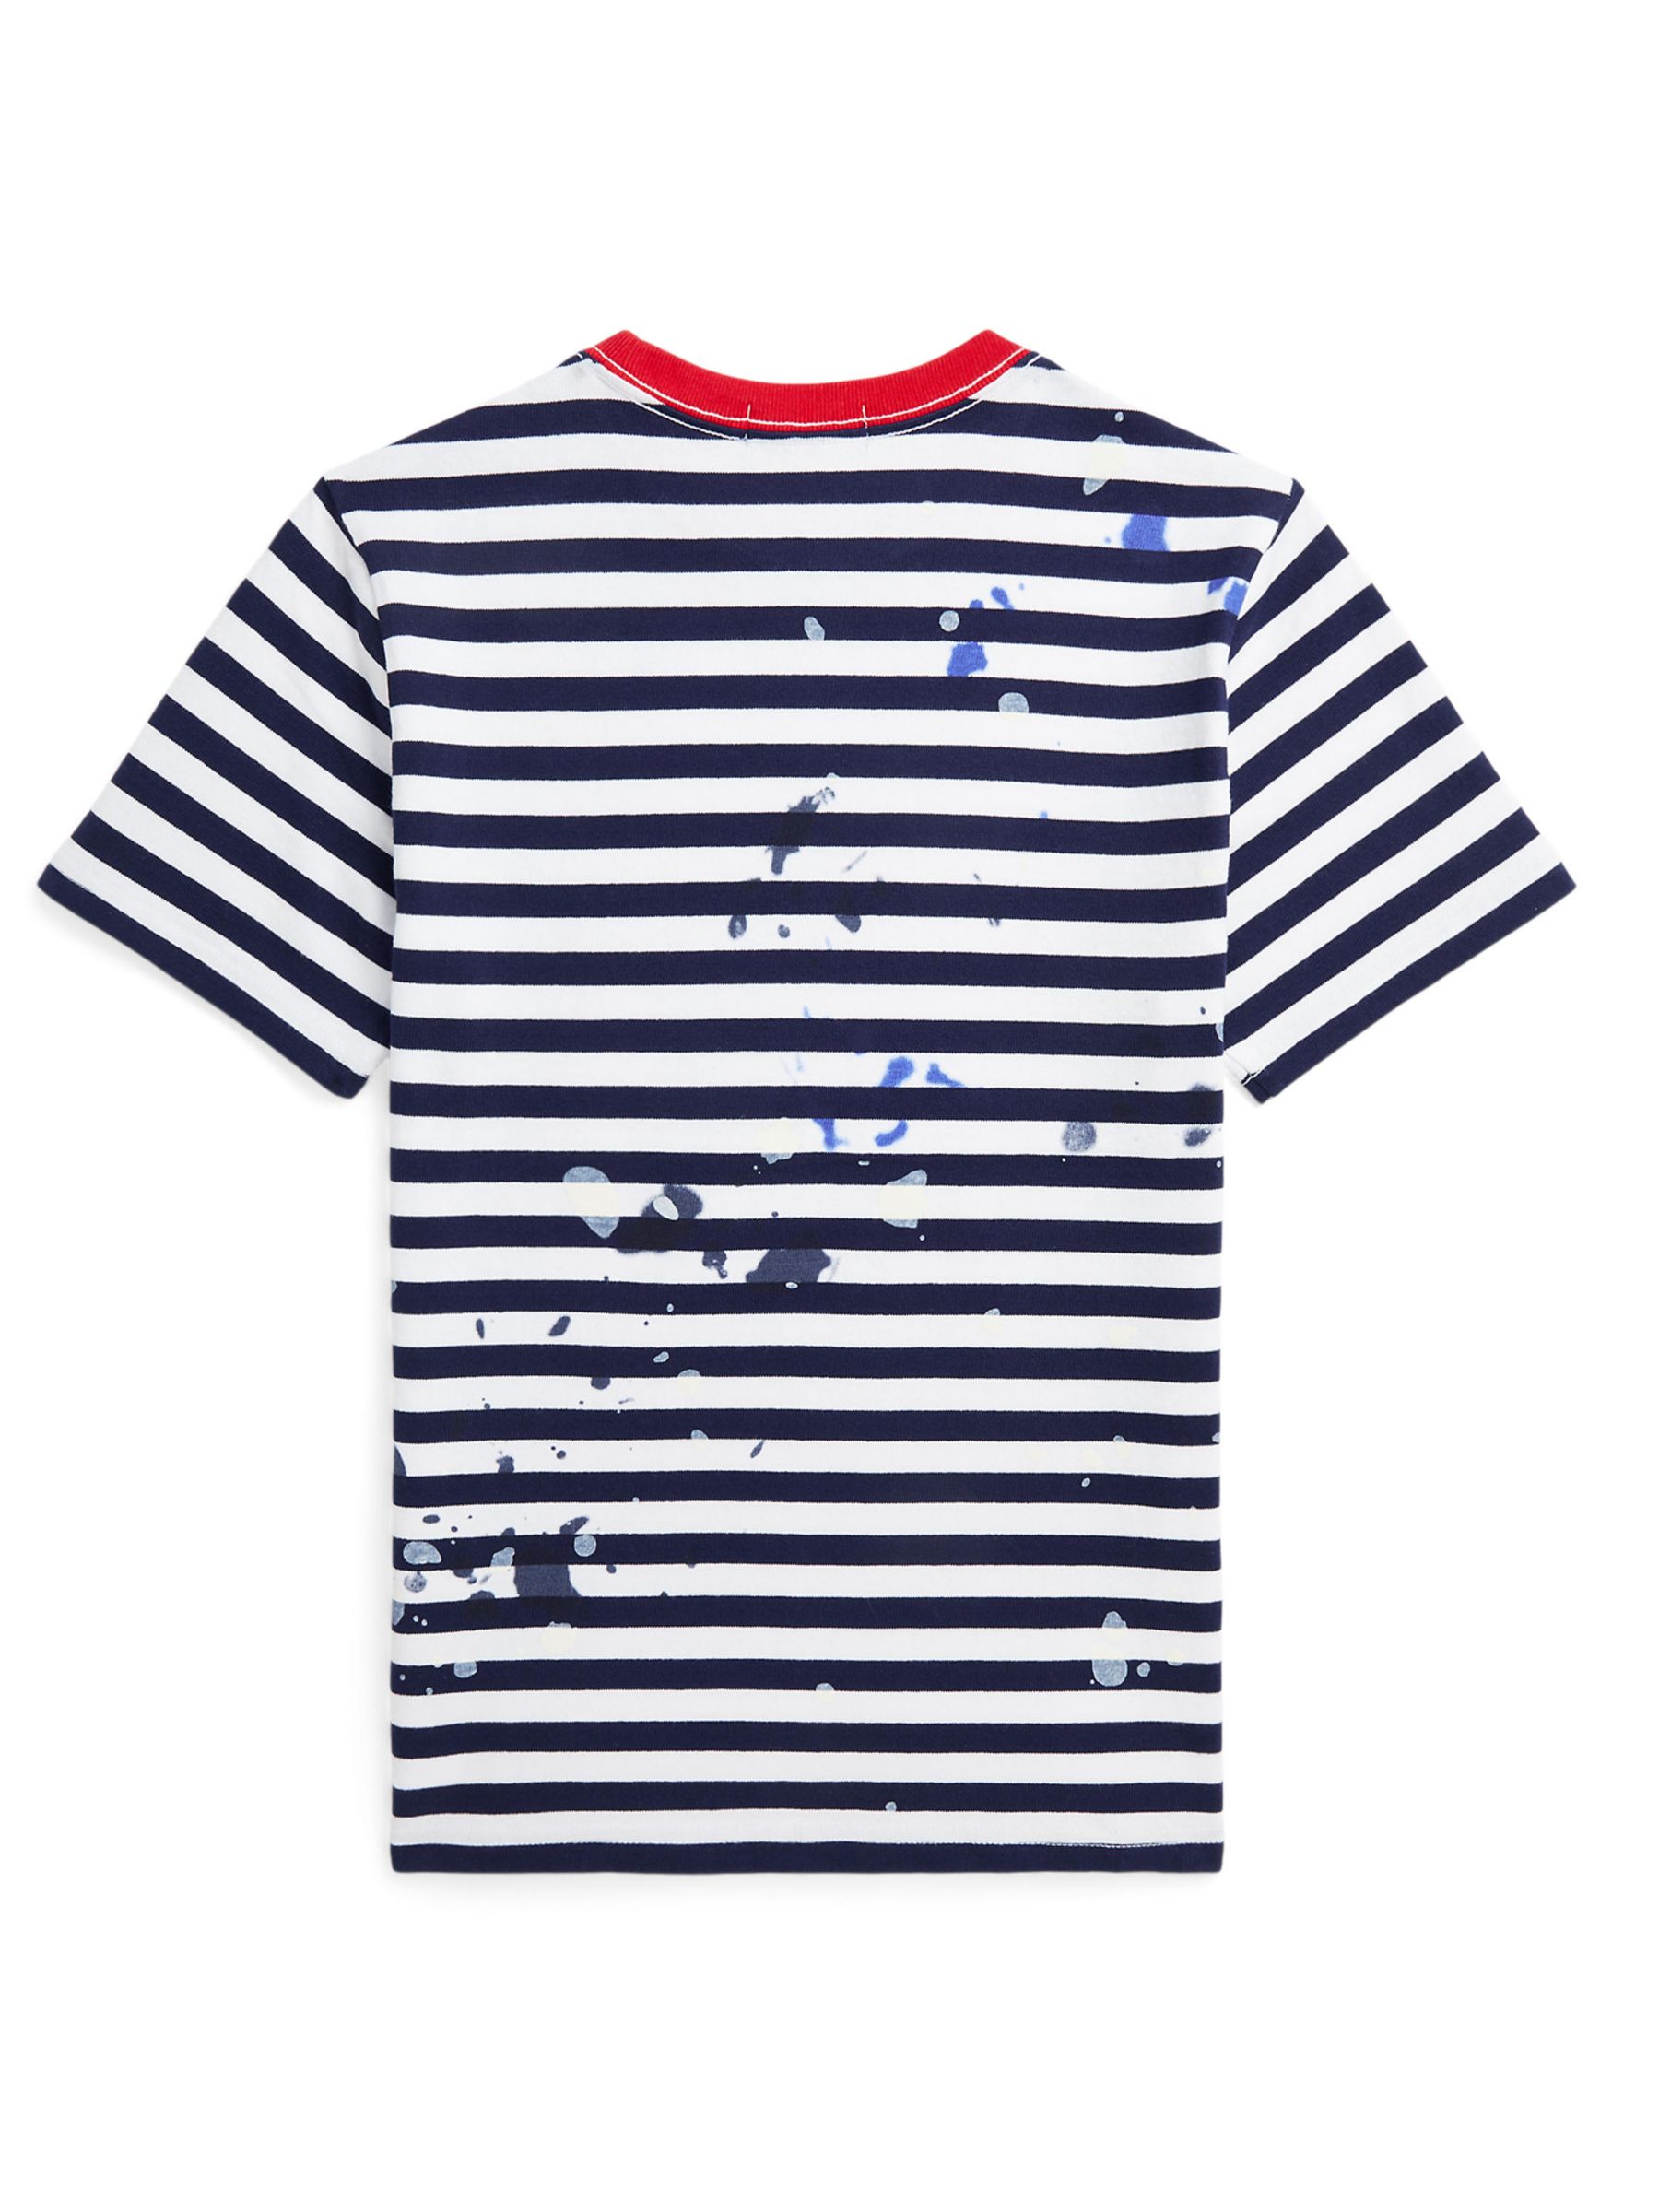 Ralph Lauren Kids' Artistic Stripe Short Sleeve T-Shirt, Newport Navy, 4 years